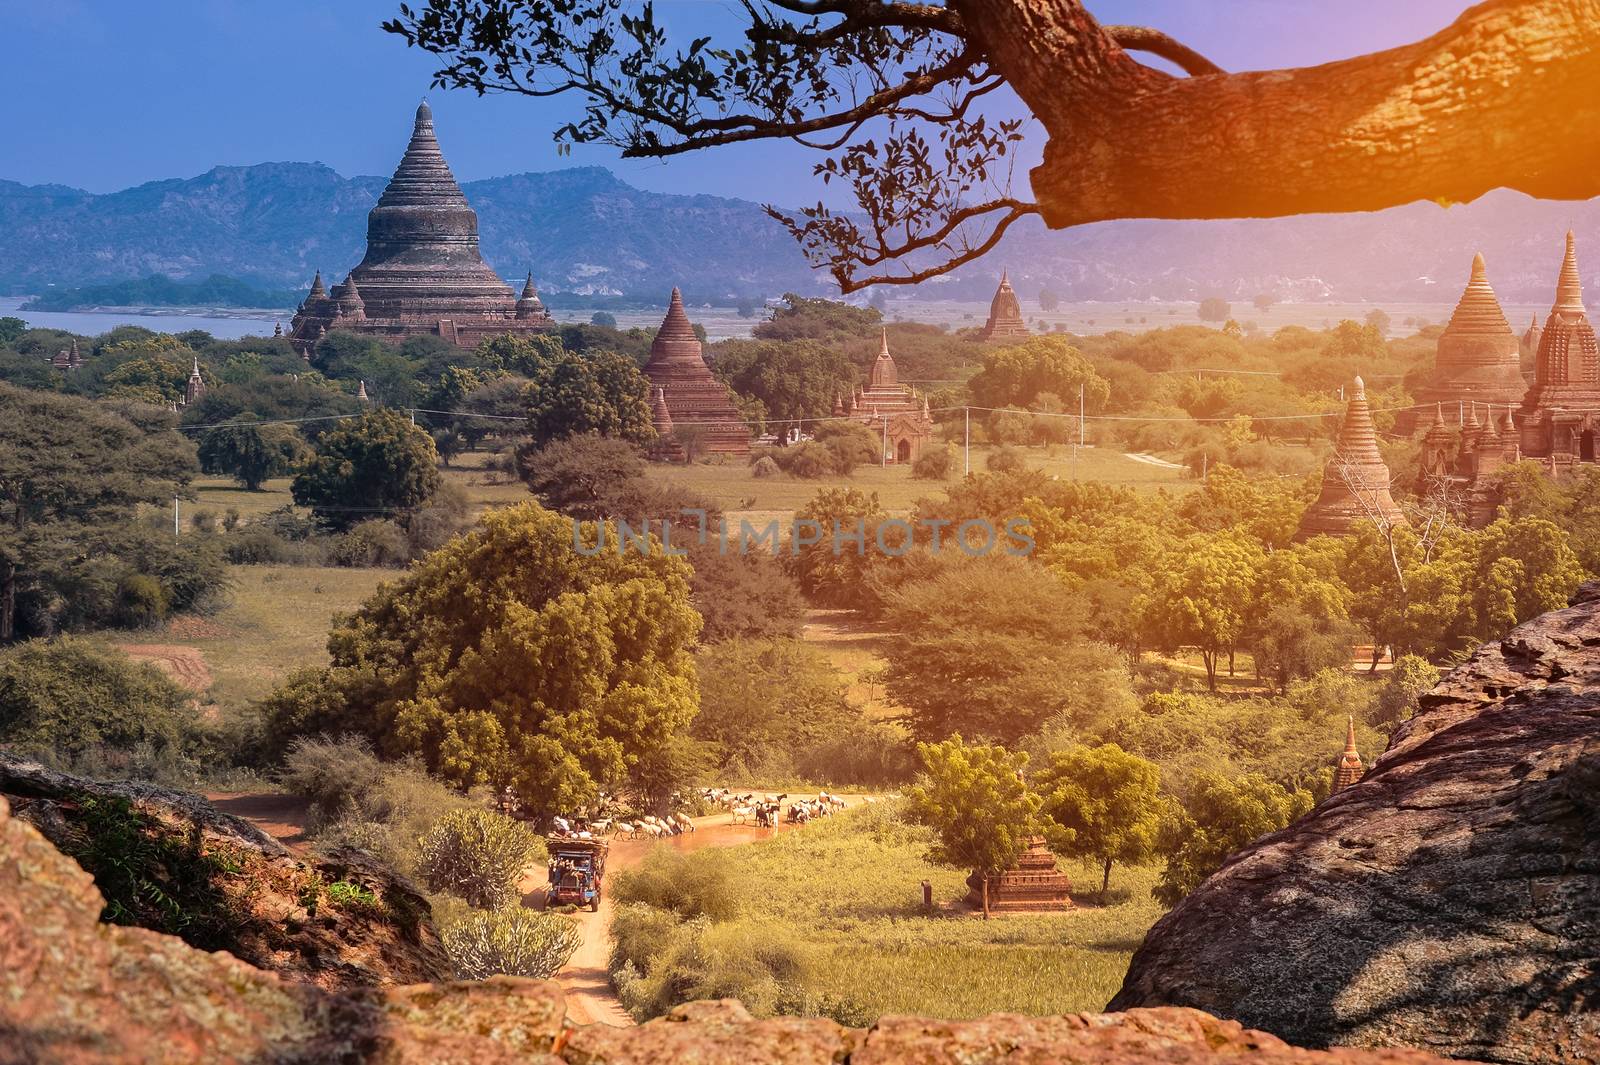 View of Pagodas on Hilltop in Bagan in Myanmar  by Surasak